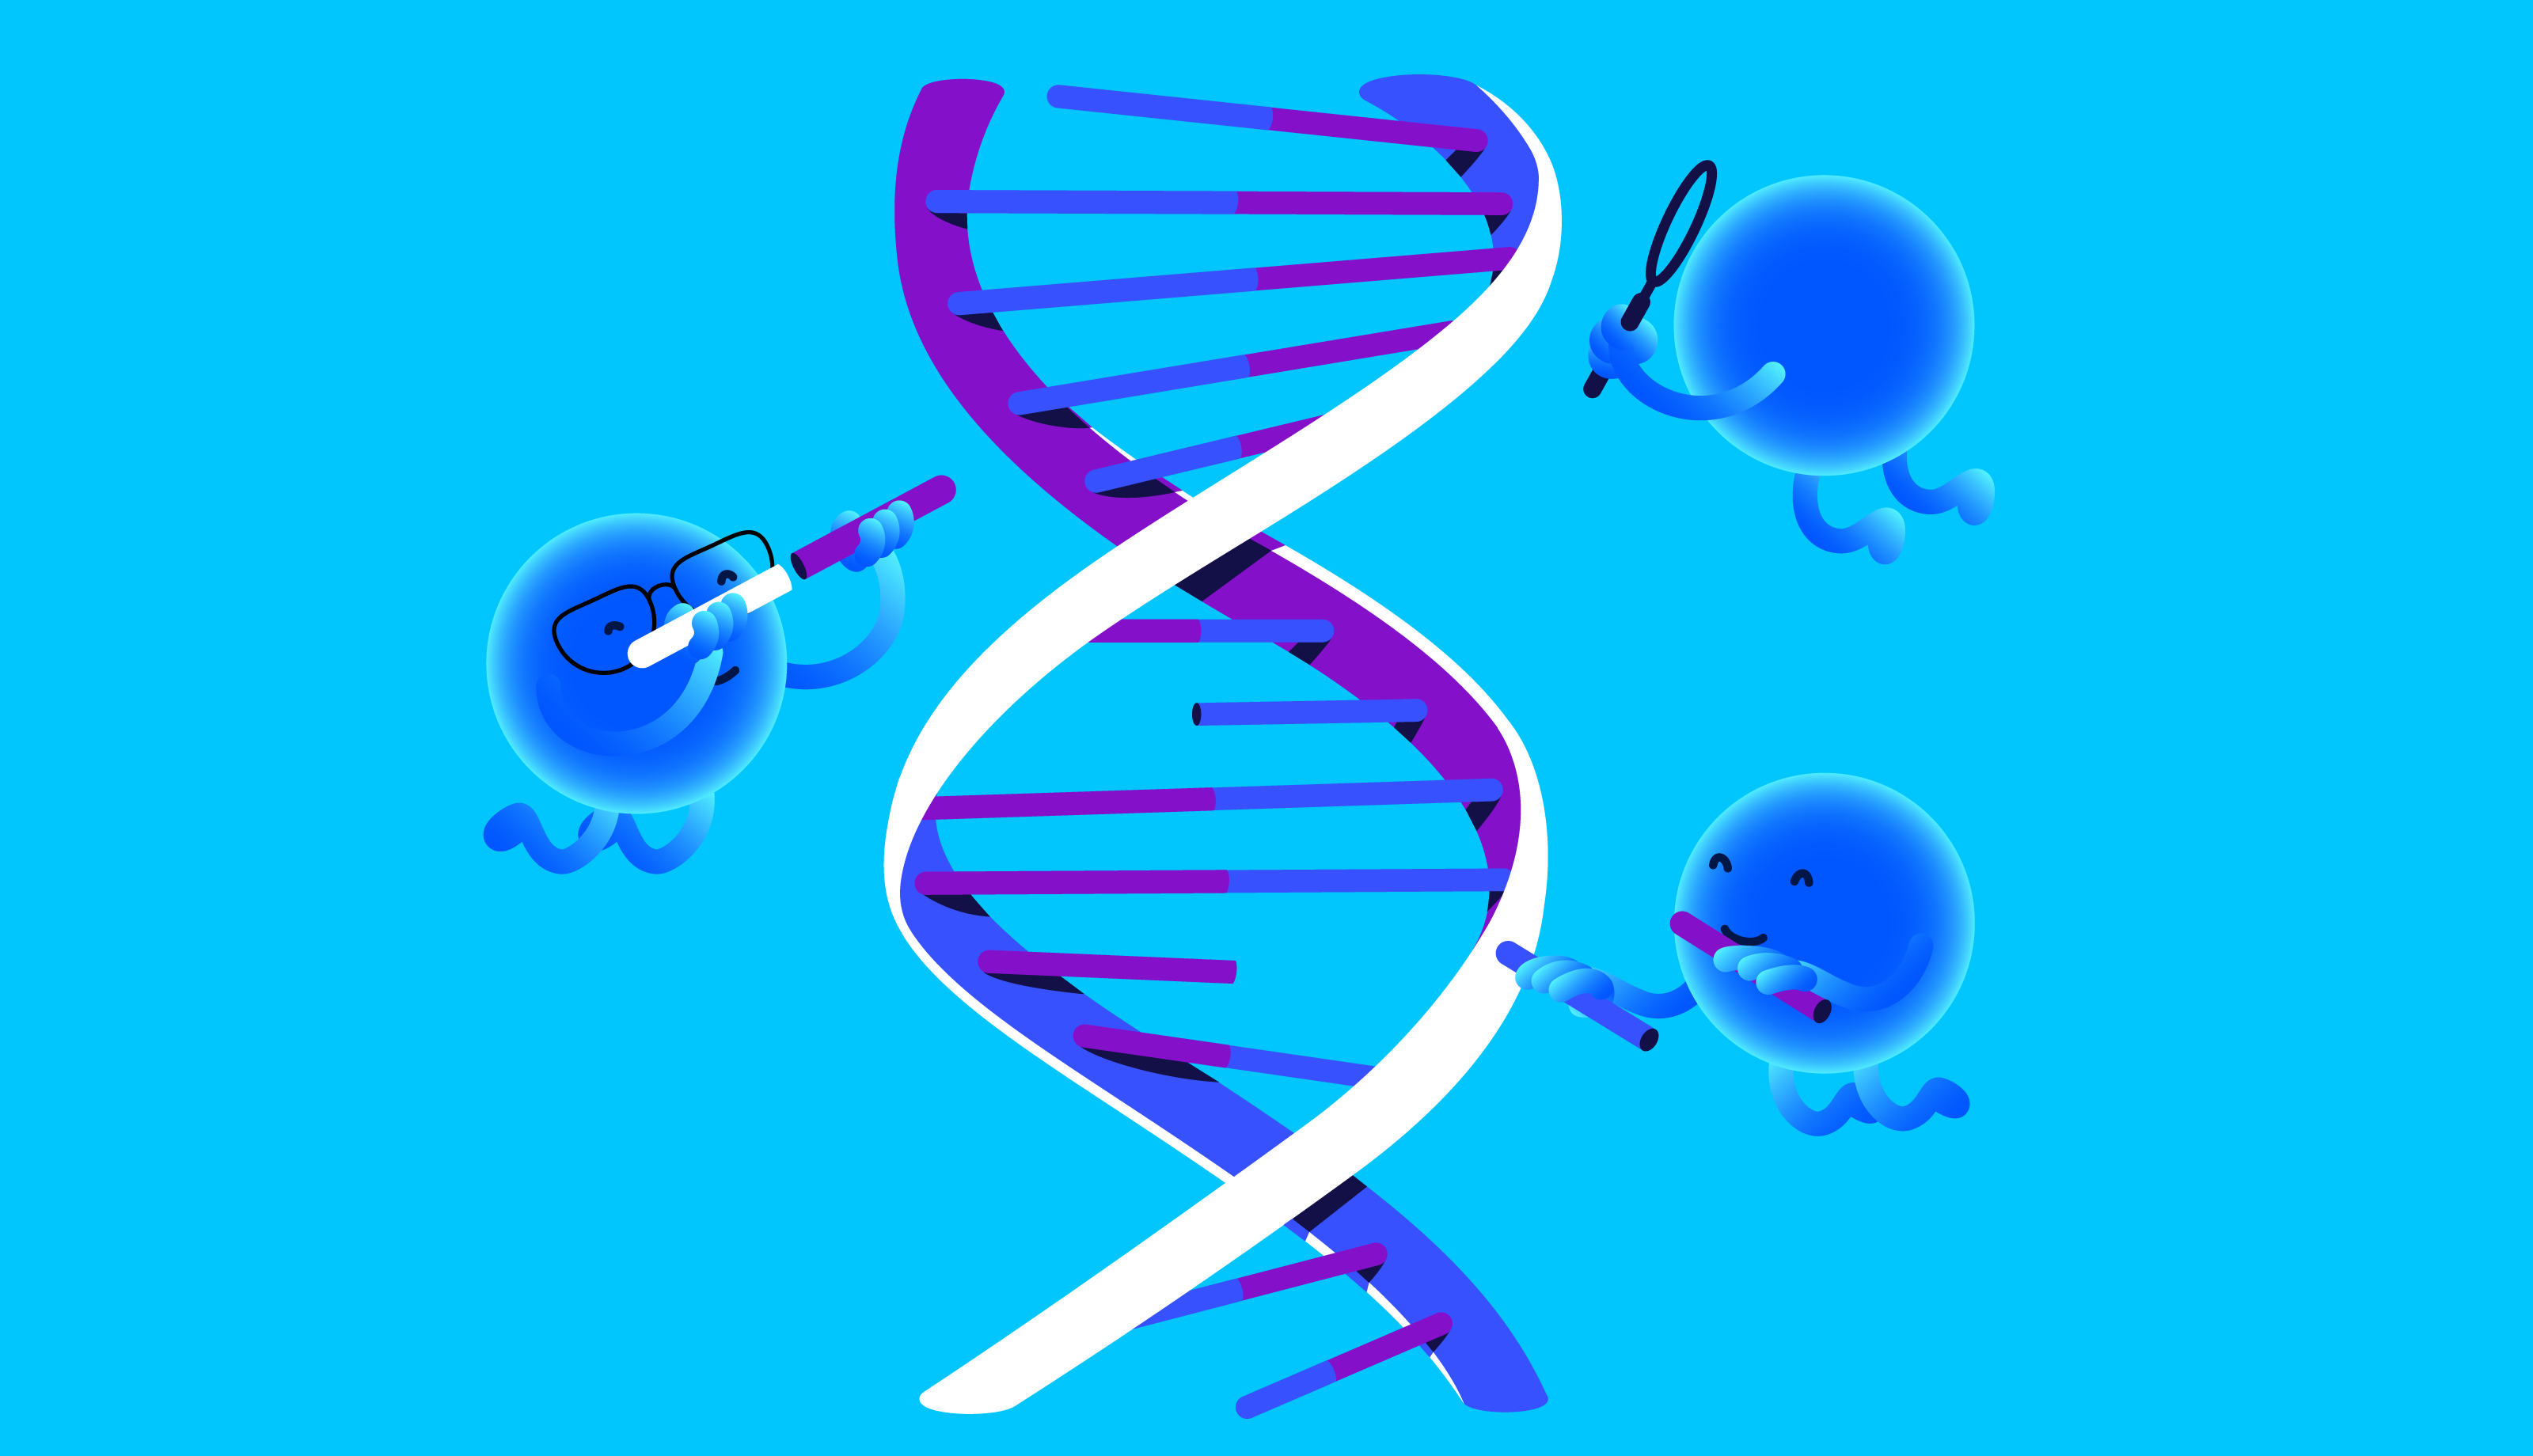 Что такое ДНК и из чего состоит геном человека?